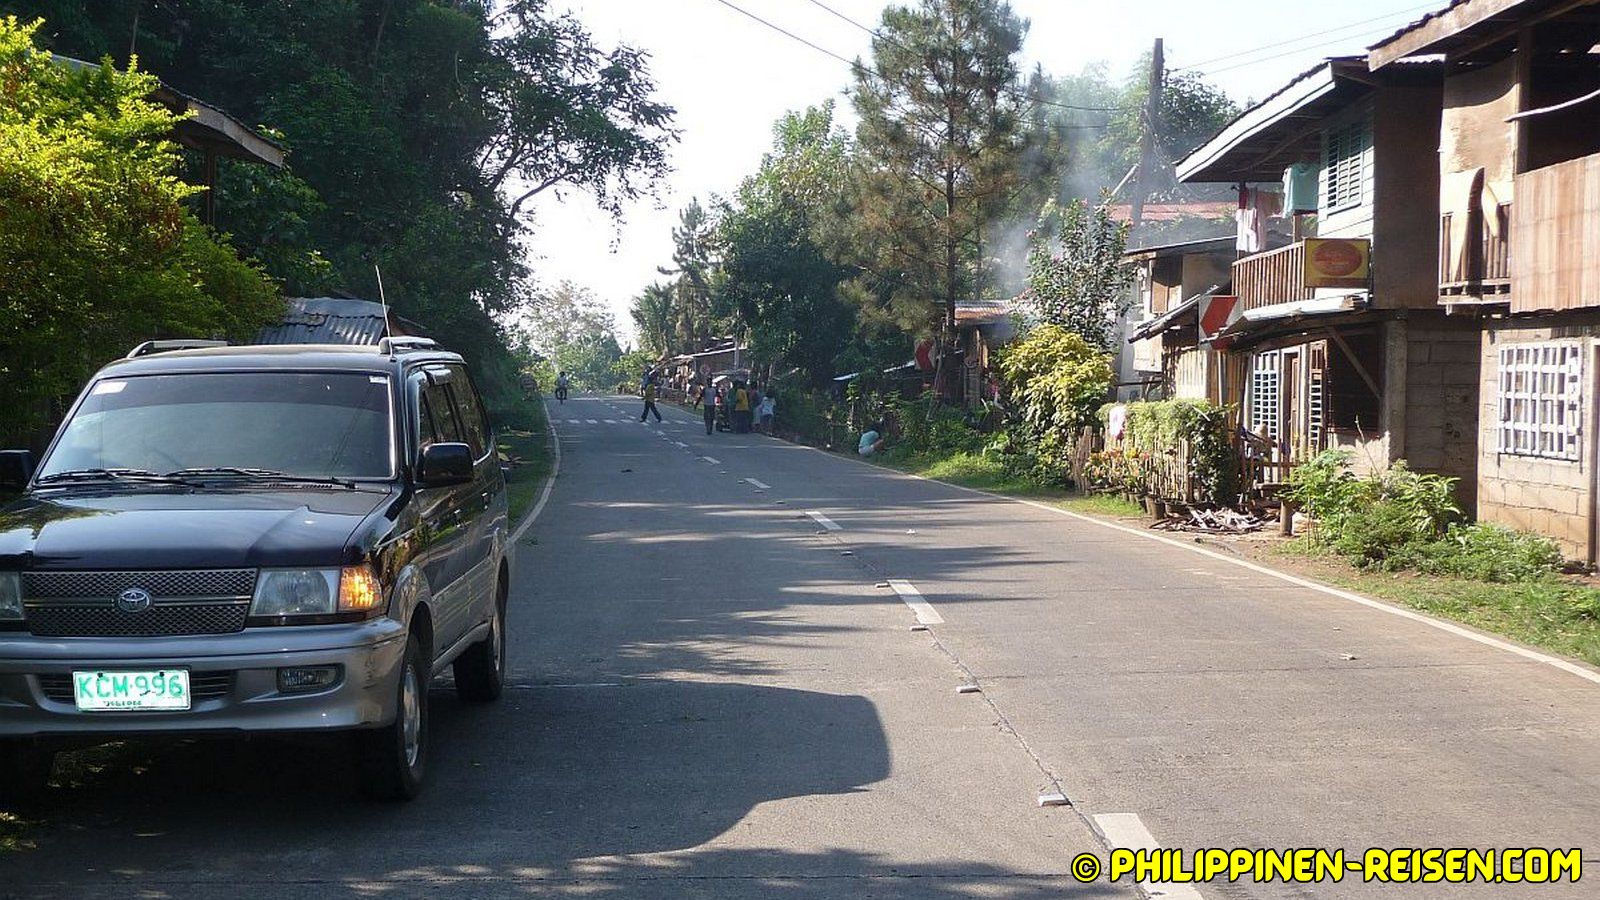 PHILIPPINEN REISEN - REISEBERICHTE - Mindanao - Unterwegs auf der N955 Foto von Sir Dieter Sokoll